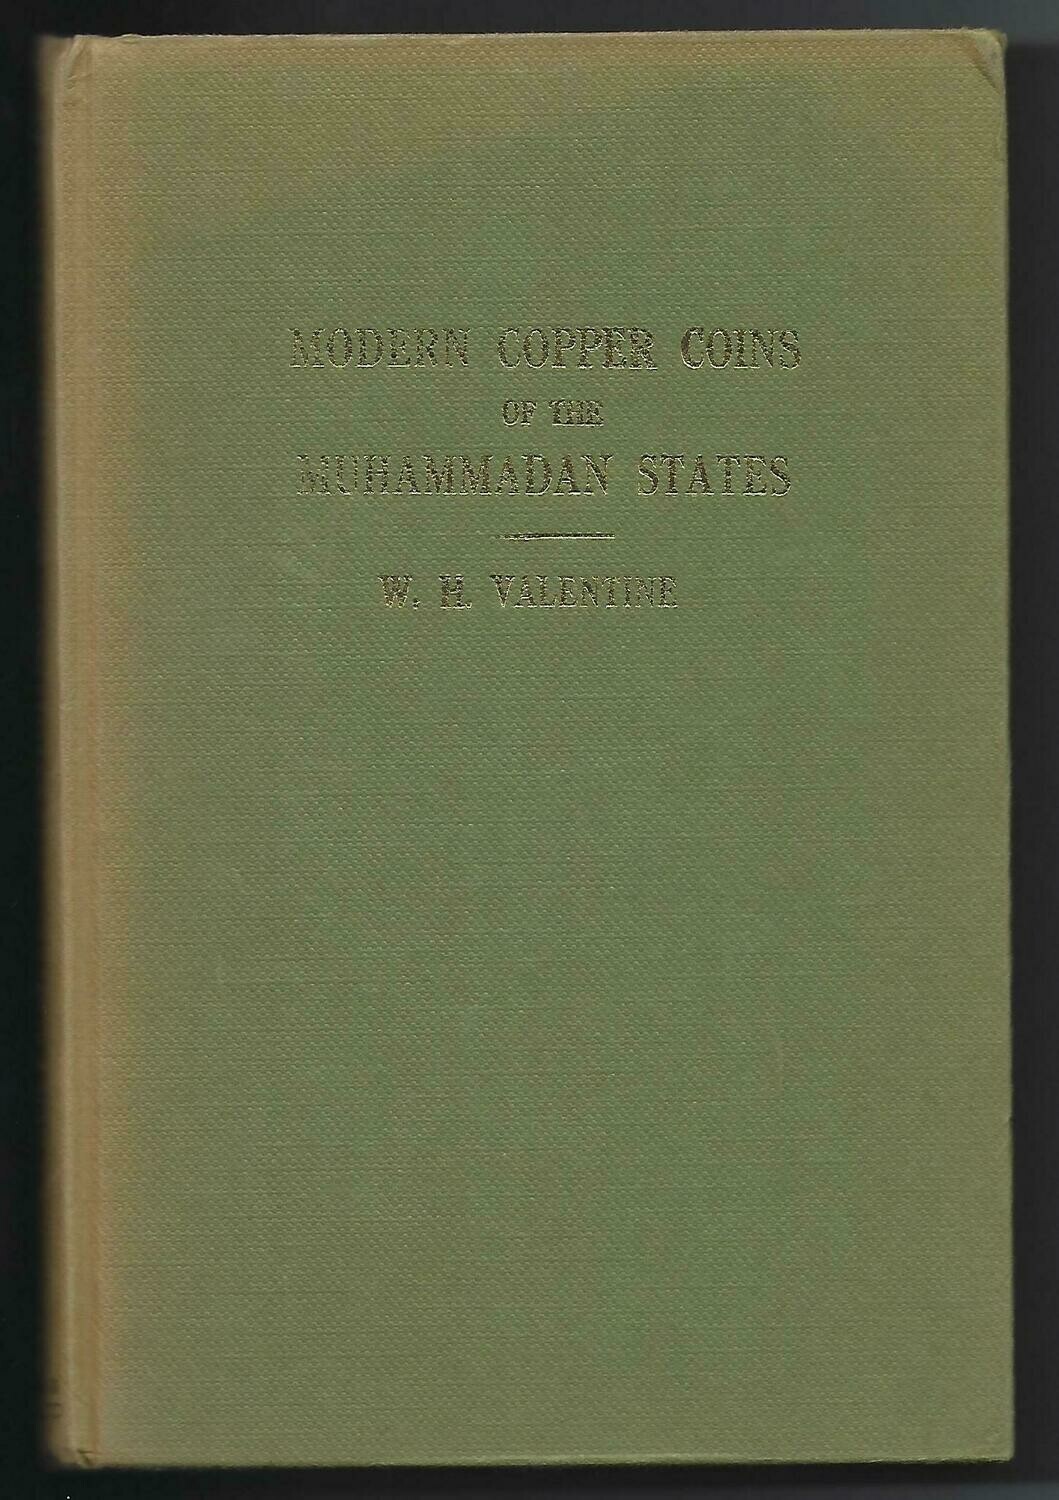 World; W.H. Valentine, "Modern Copper Coins of the Muhammadan States."